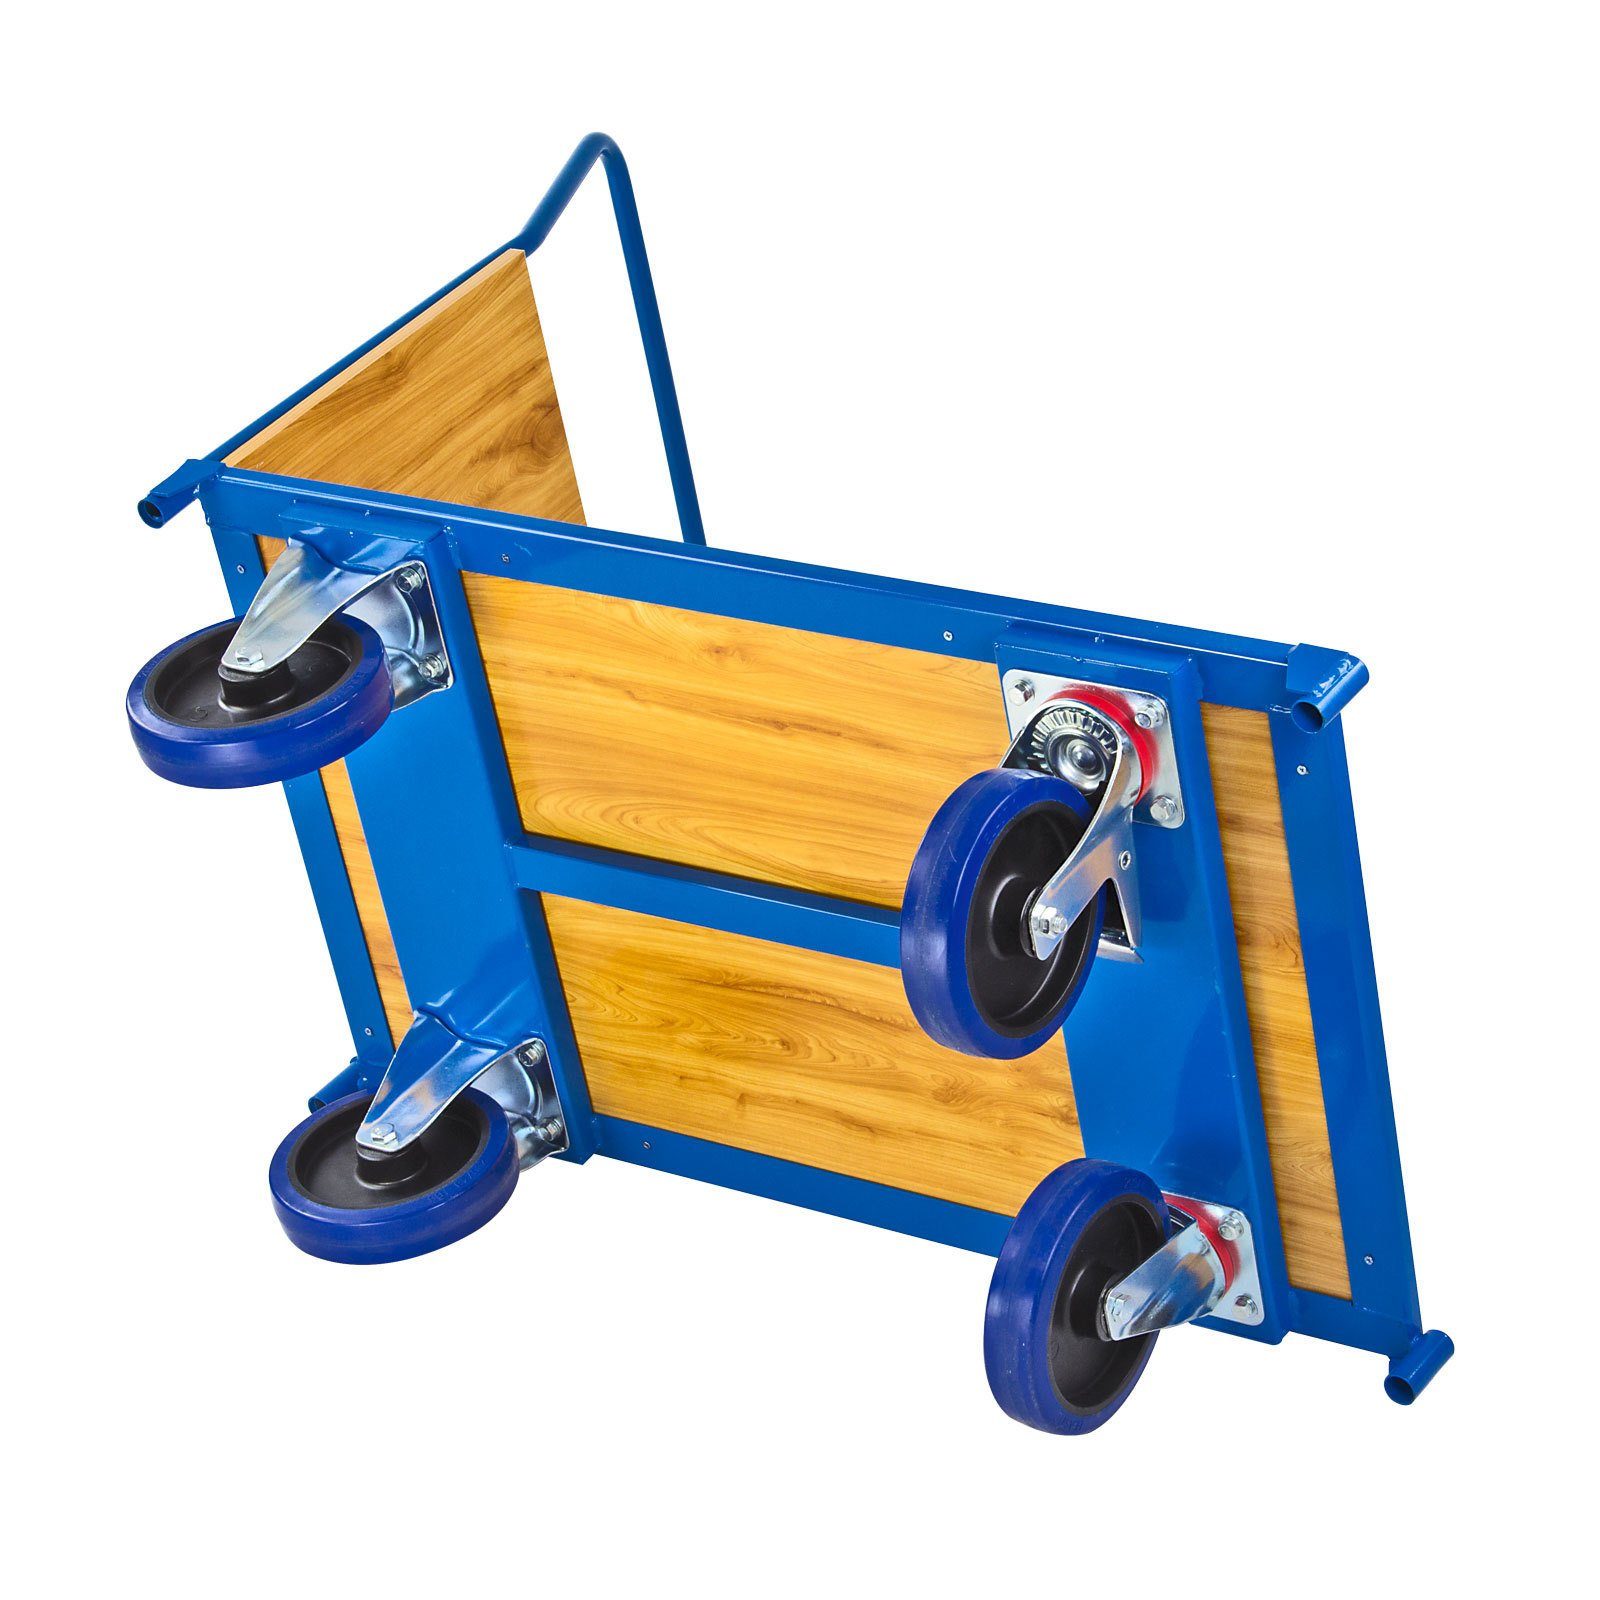 PROREGAL® Handwagen Transportwagen 97x61x116cm, 600kg, Blau HxBxL Pro, Traglast